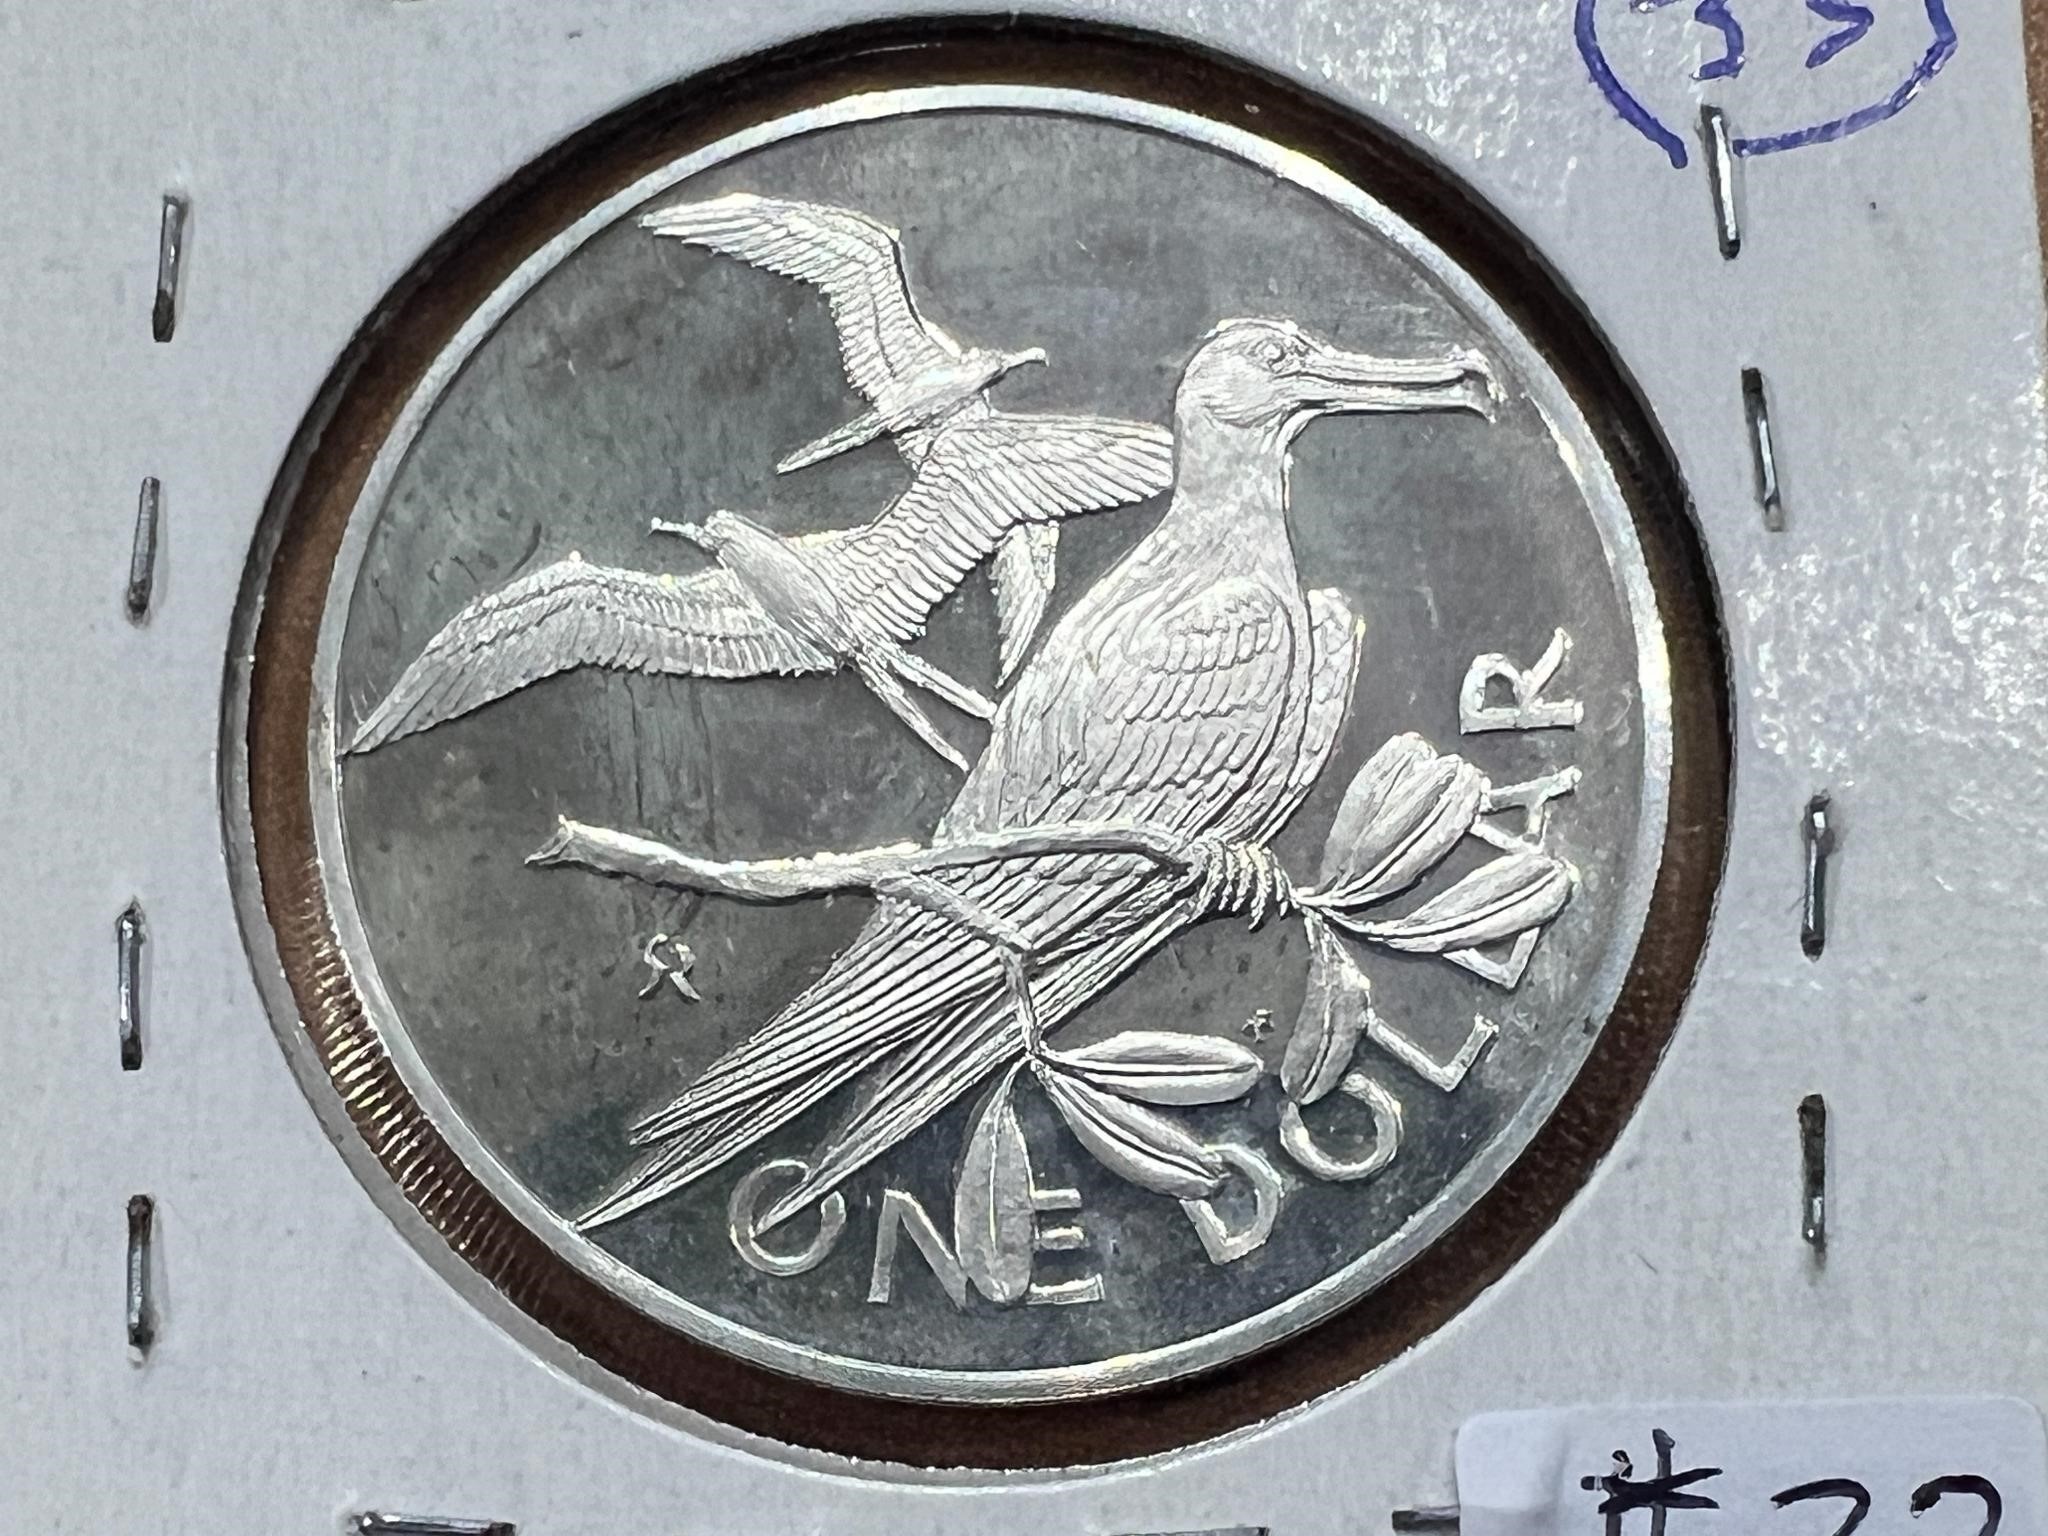 1973 British Virgin Island Silver Pound